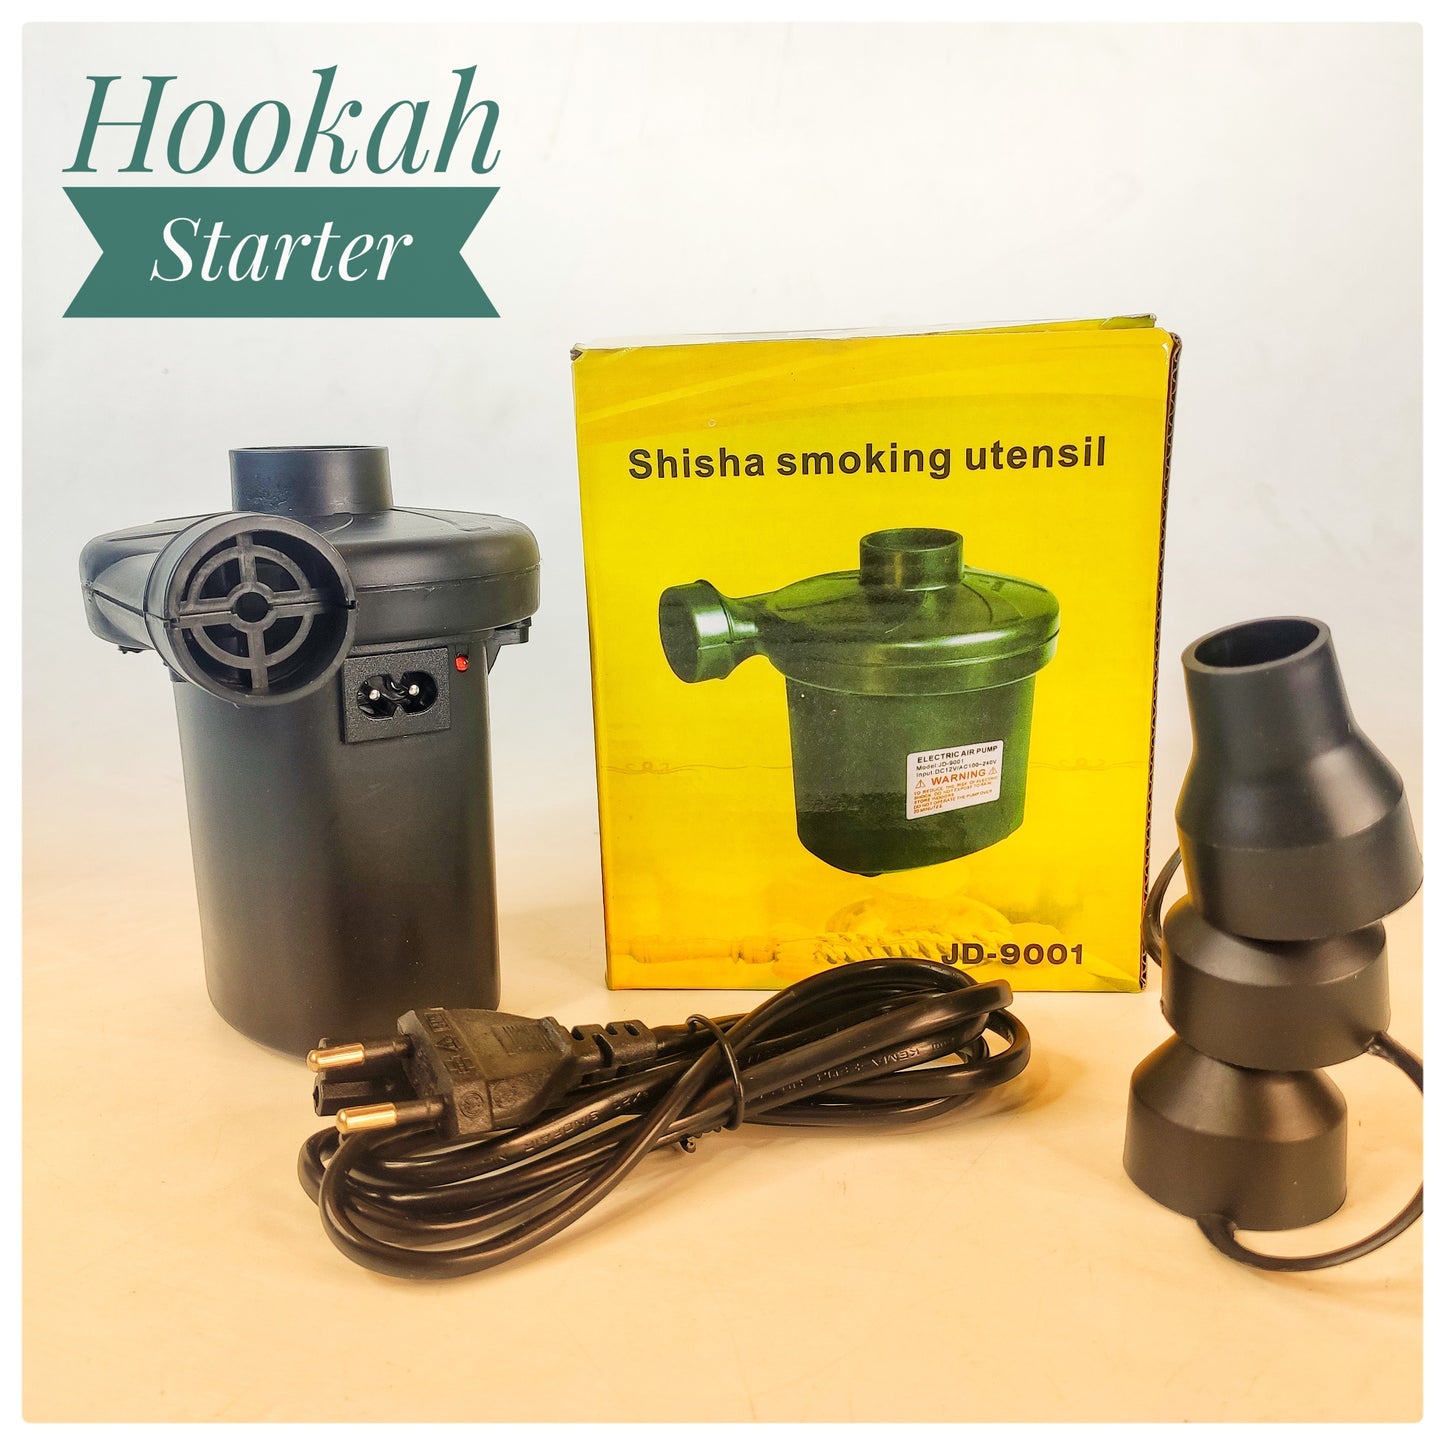 Electric Rechargeable Hookah Starter - Smoke Maker